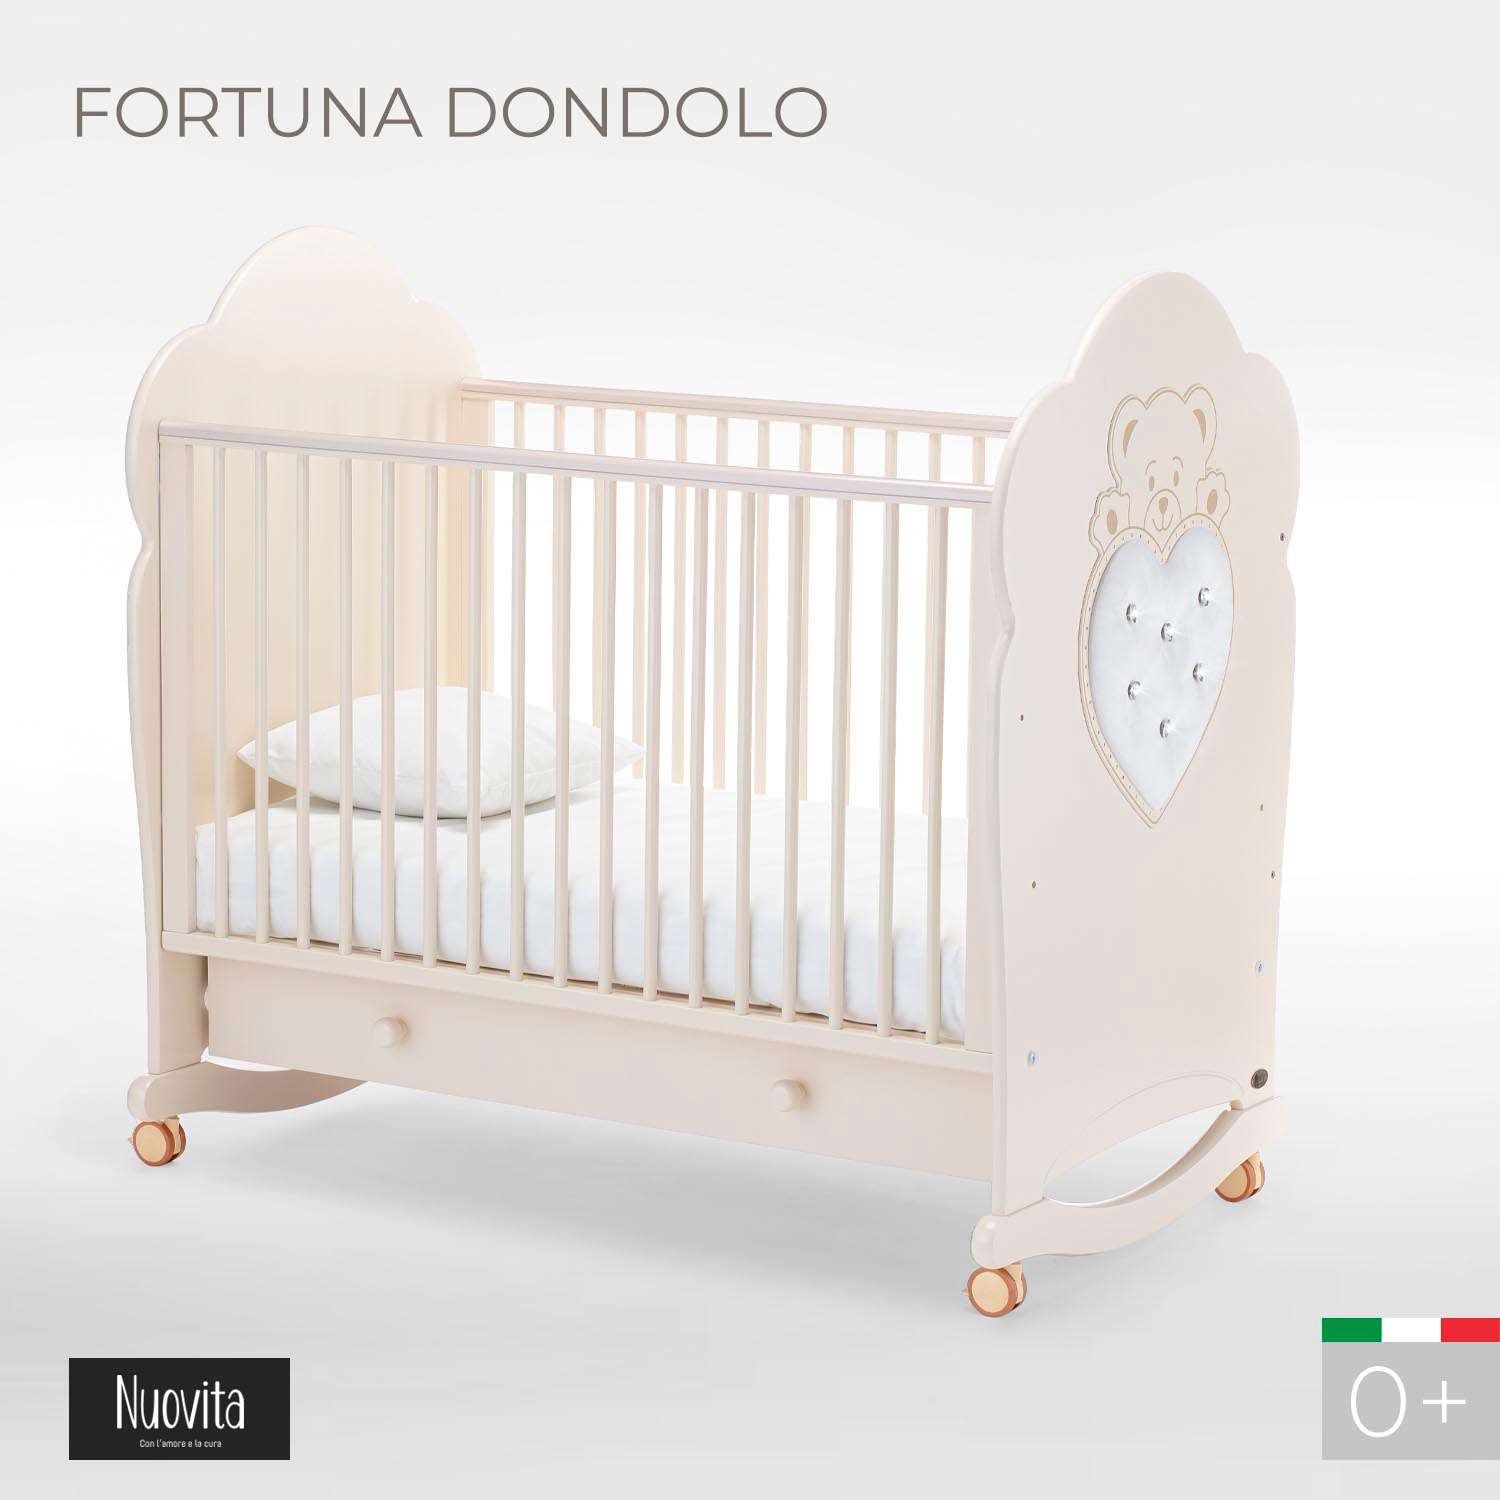 Детская кроватка Nuovita Fortuna Dondolo прямоугольная, без маятника (слоновая кость) - фото 2